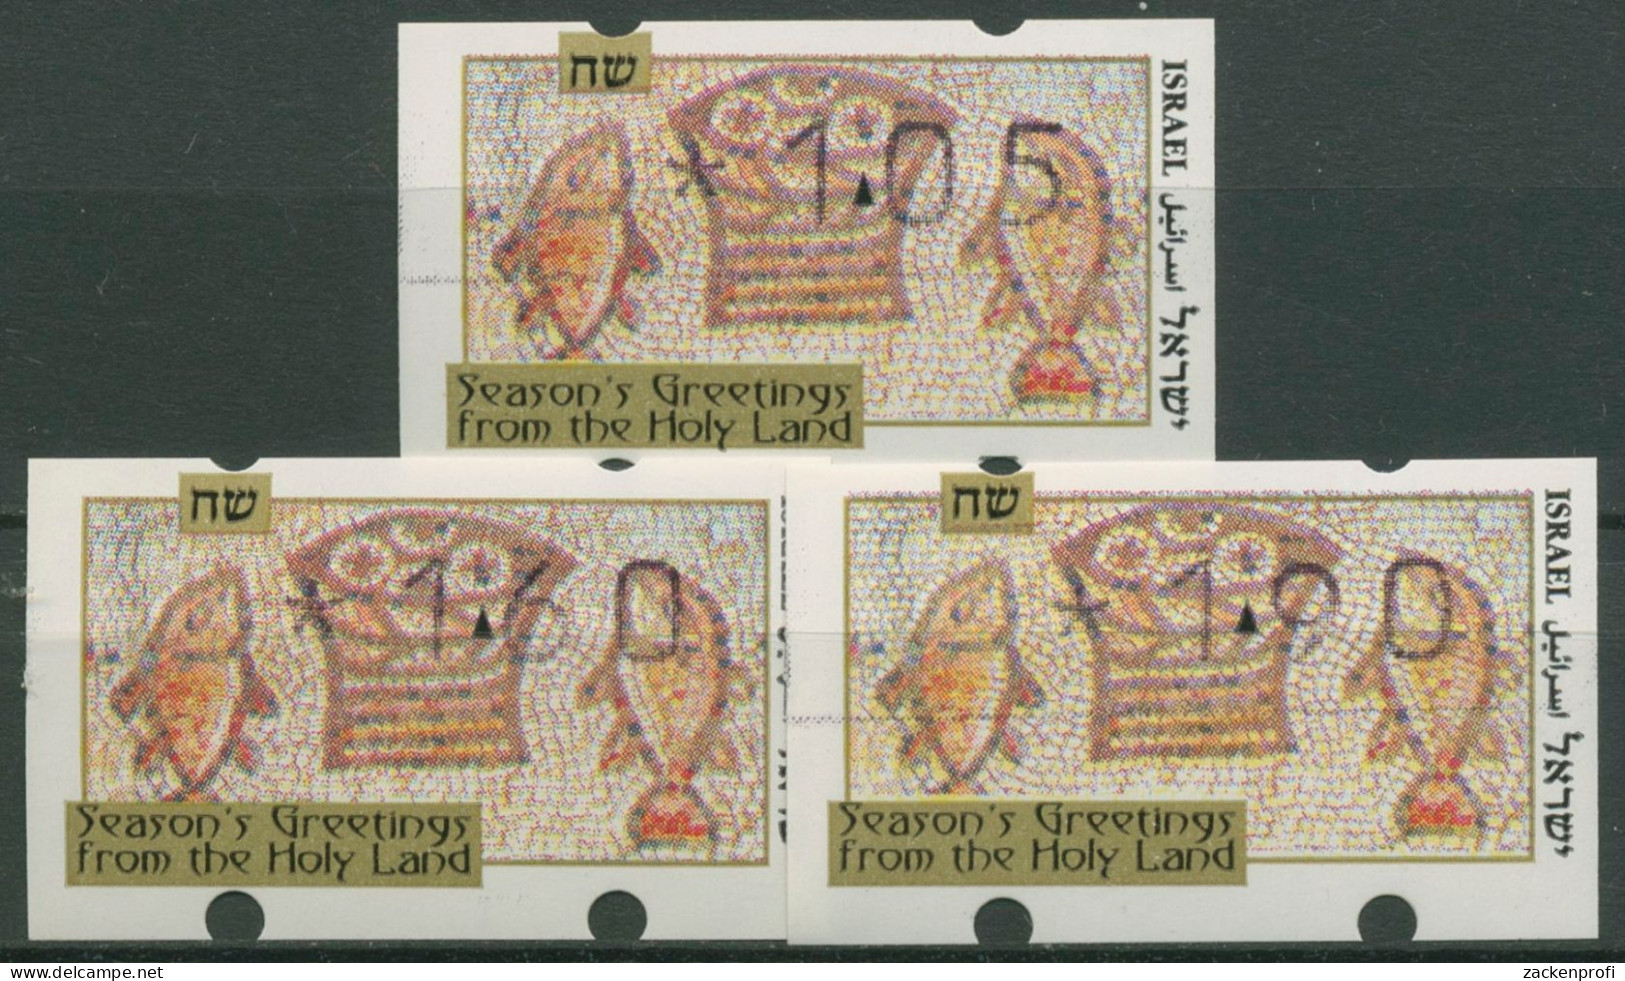 Israel 1996 Automatenmarken Weihnachten Satz 3 Werte ATM 29 S1 Postfrisch - Franking Labels